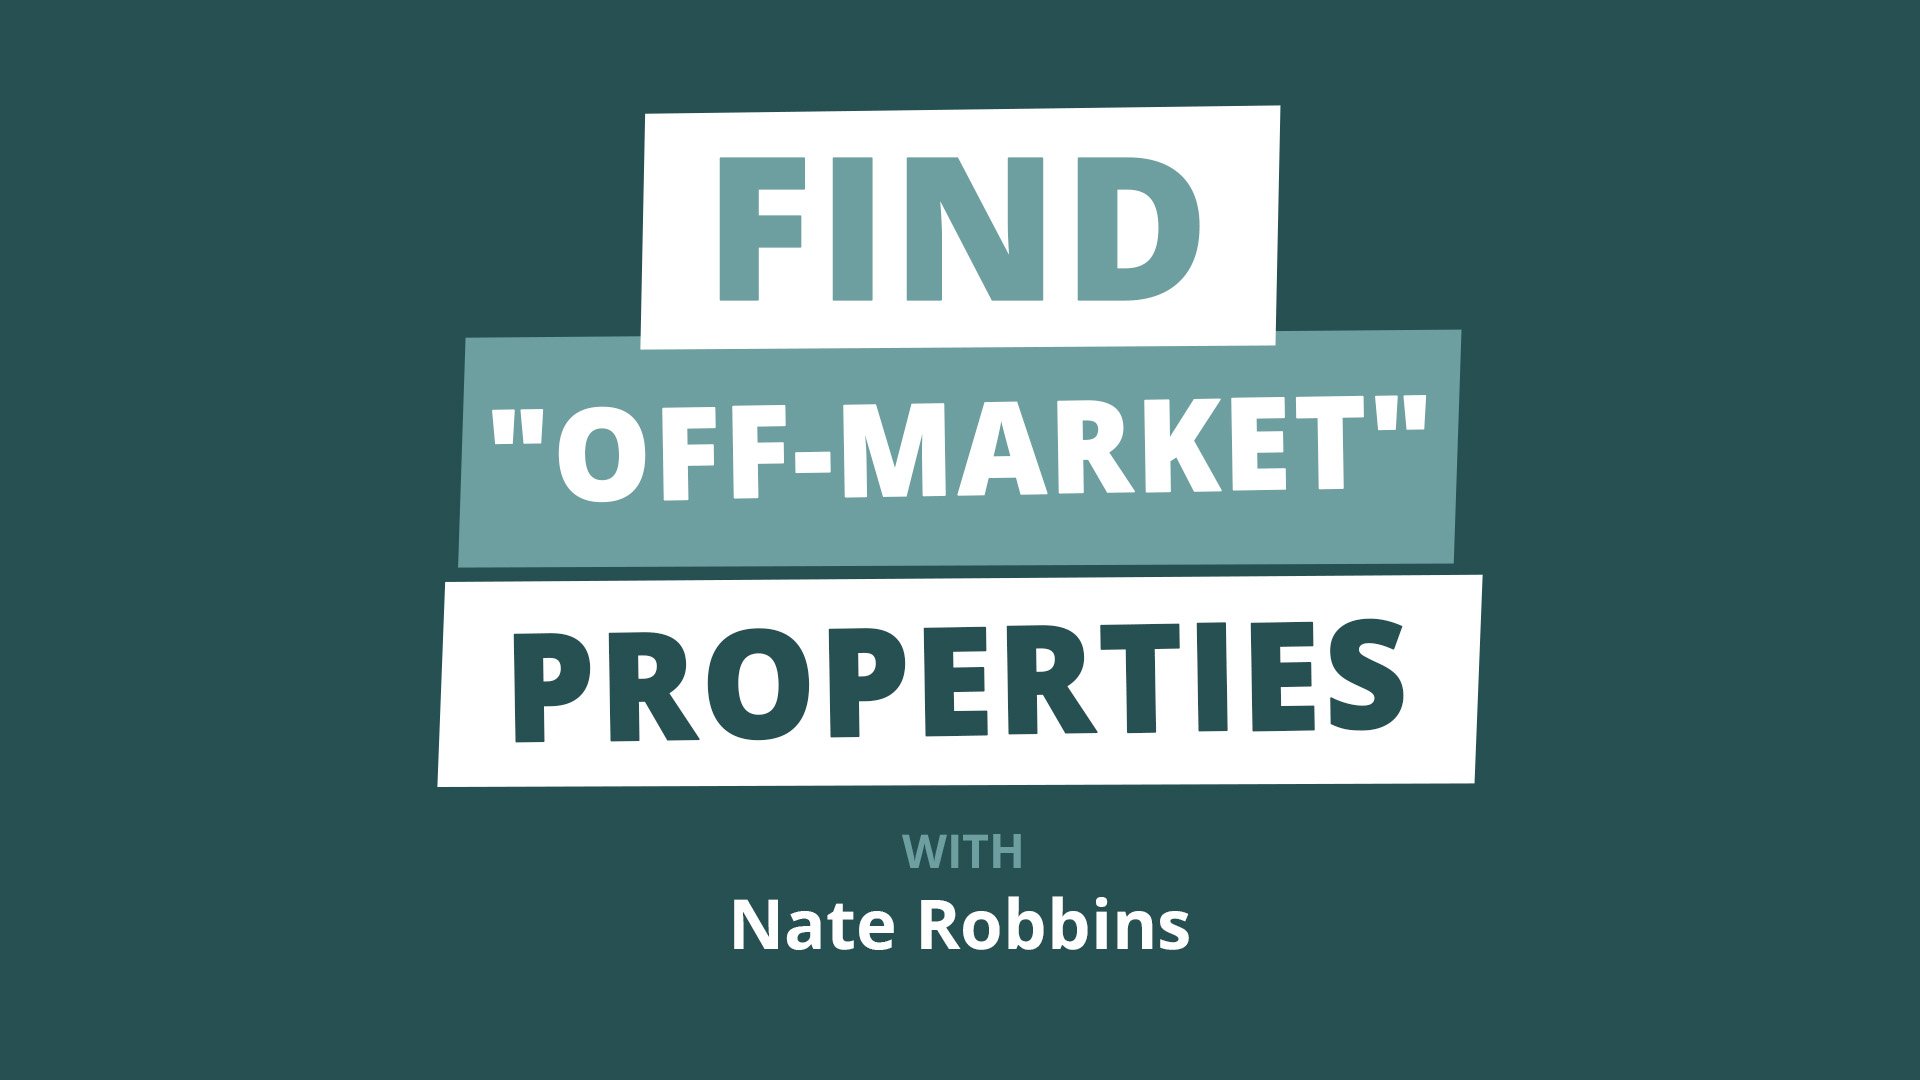 Trin-for-trin-guiden til at finde de bedste tilbud på fast ejendom uden for markedet